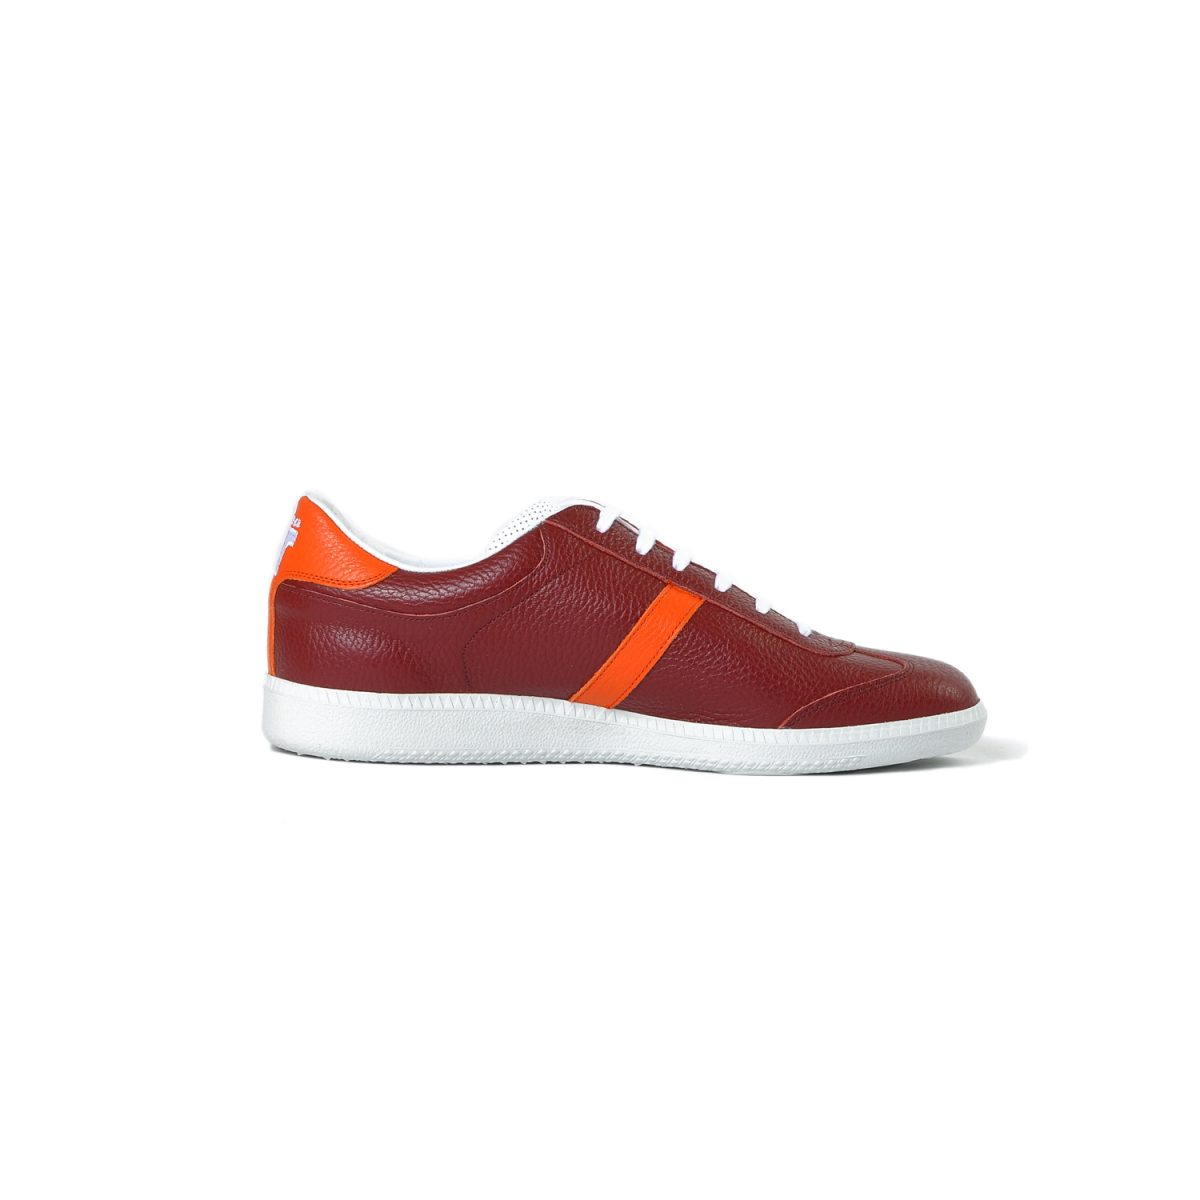 Tisza shoes - Compakt - Burgundy-orange